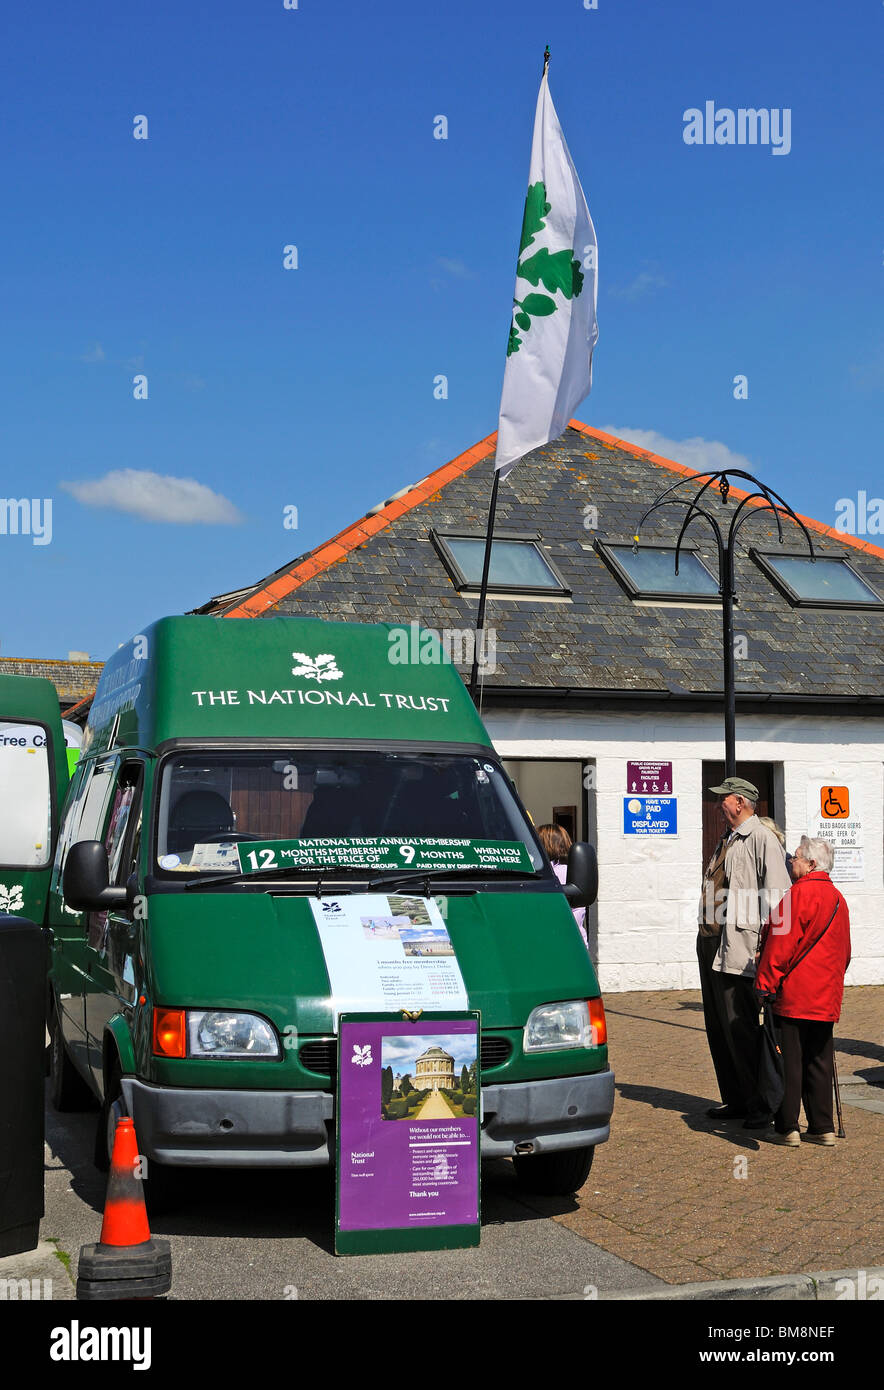 Personen an einer nationalen Vertrauen Mitgliedschaft van in Falmouth, Cornwall, uk Stockfoto